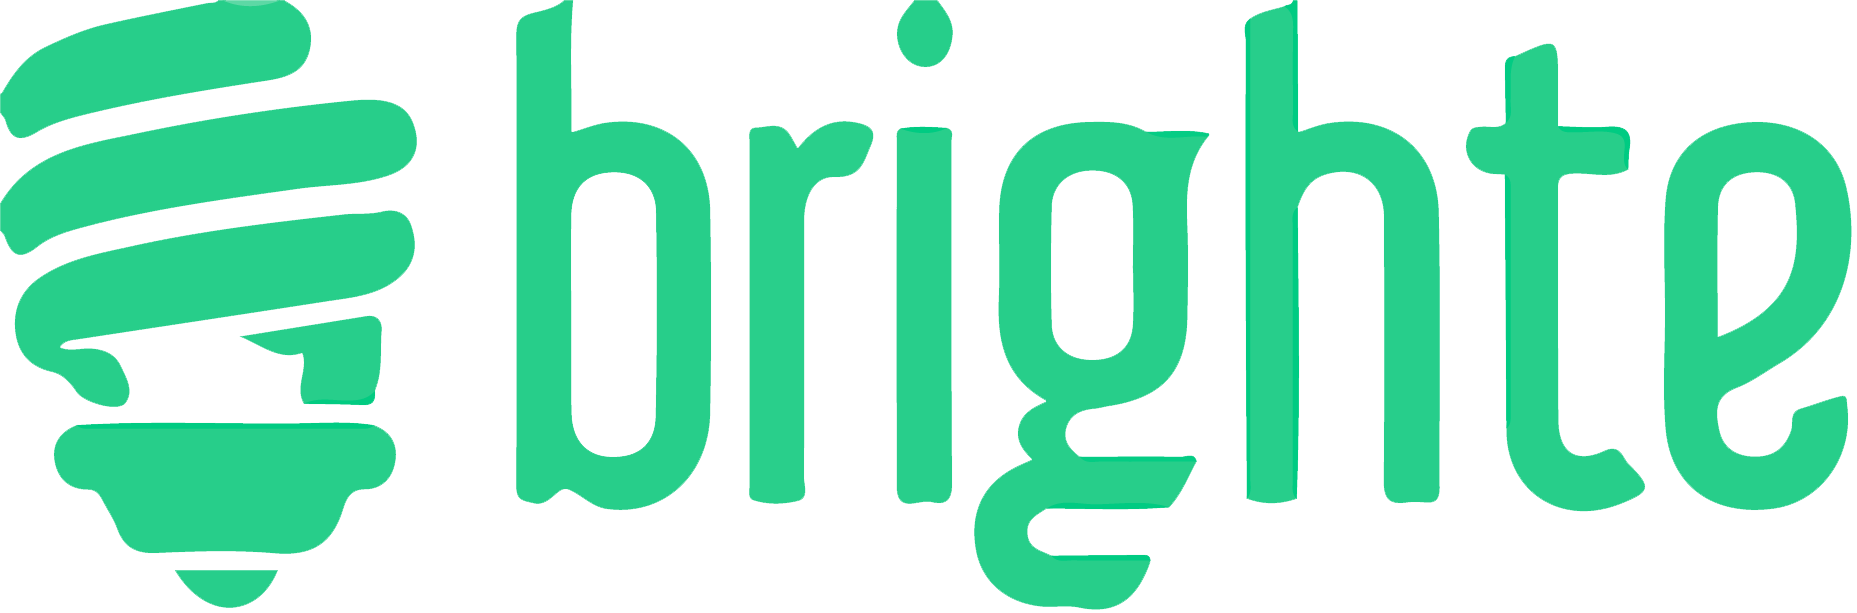 brighte-logo